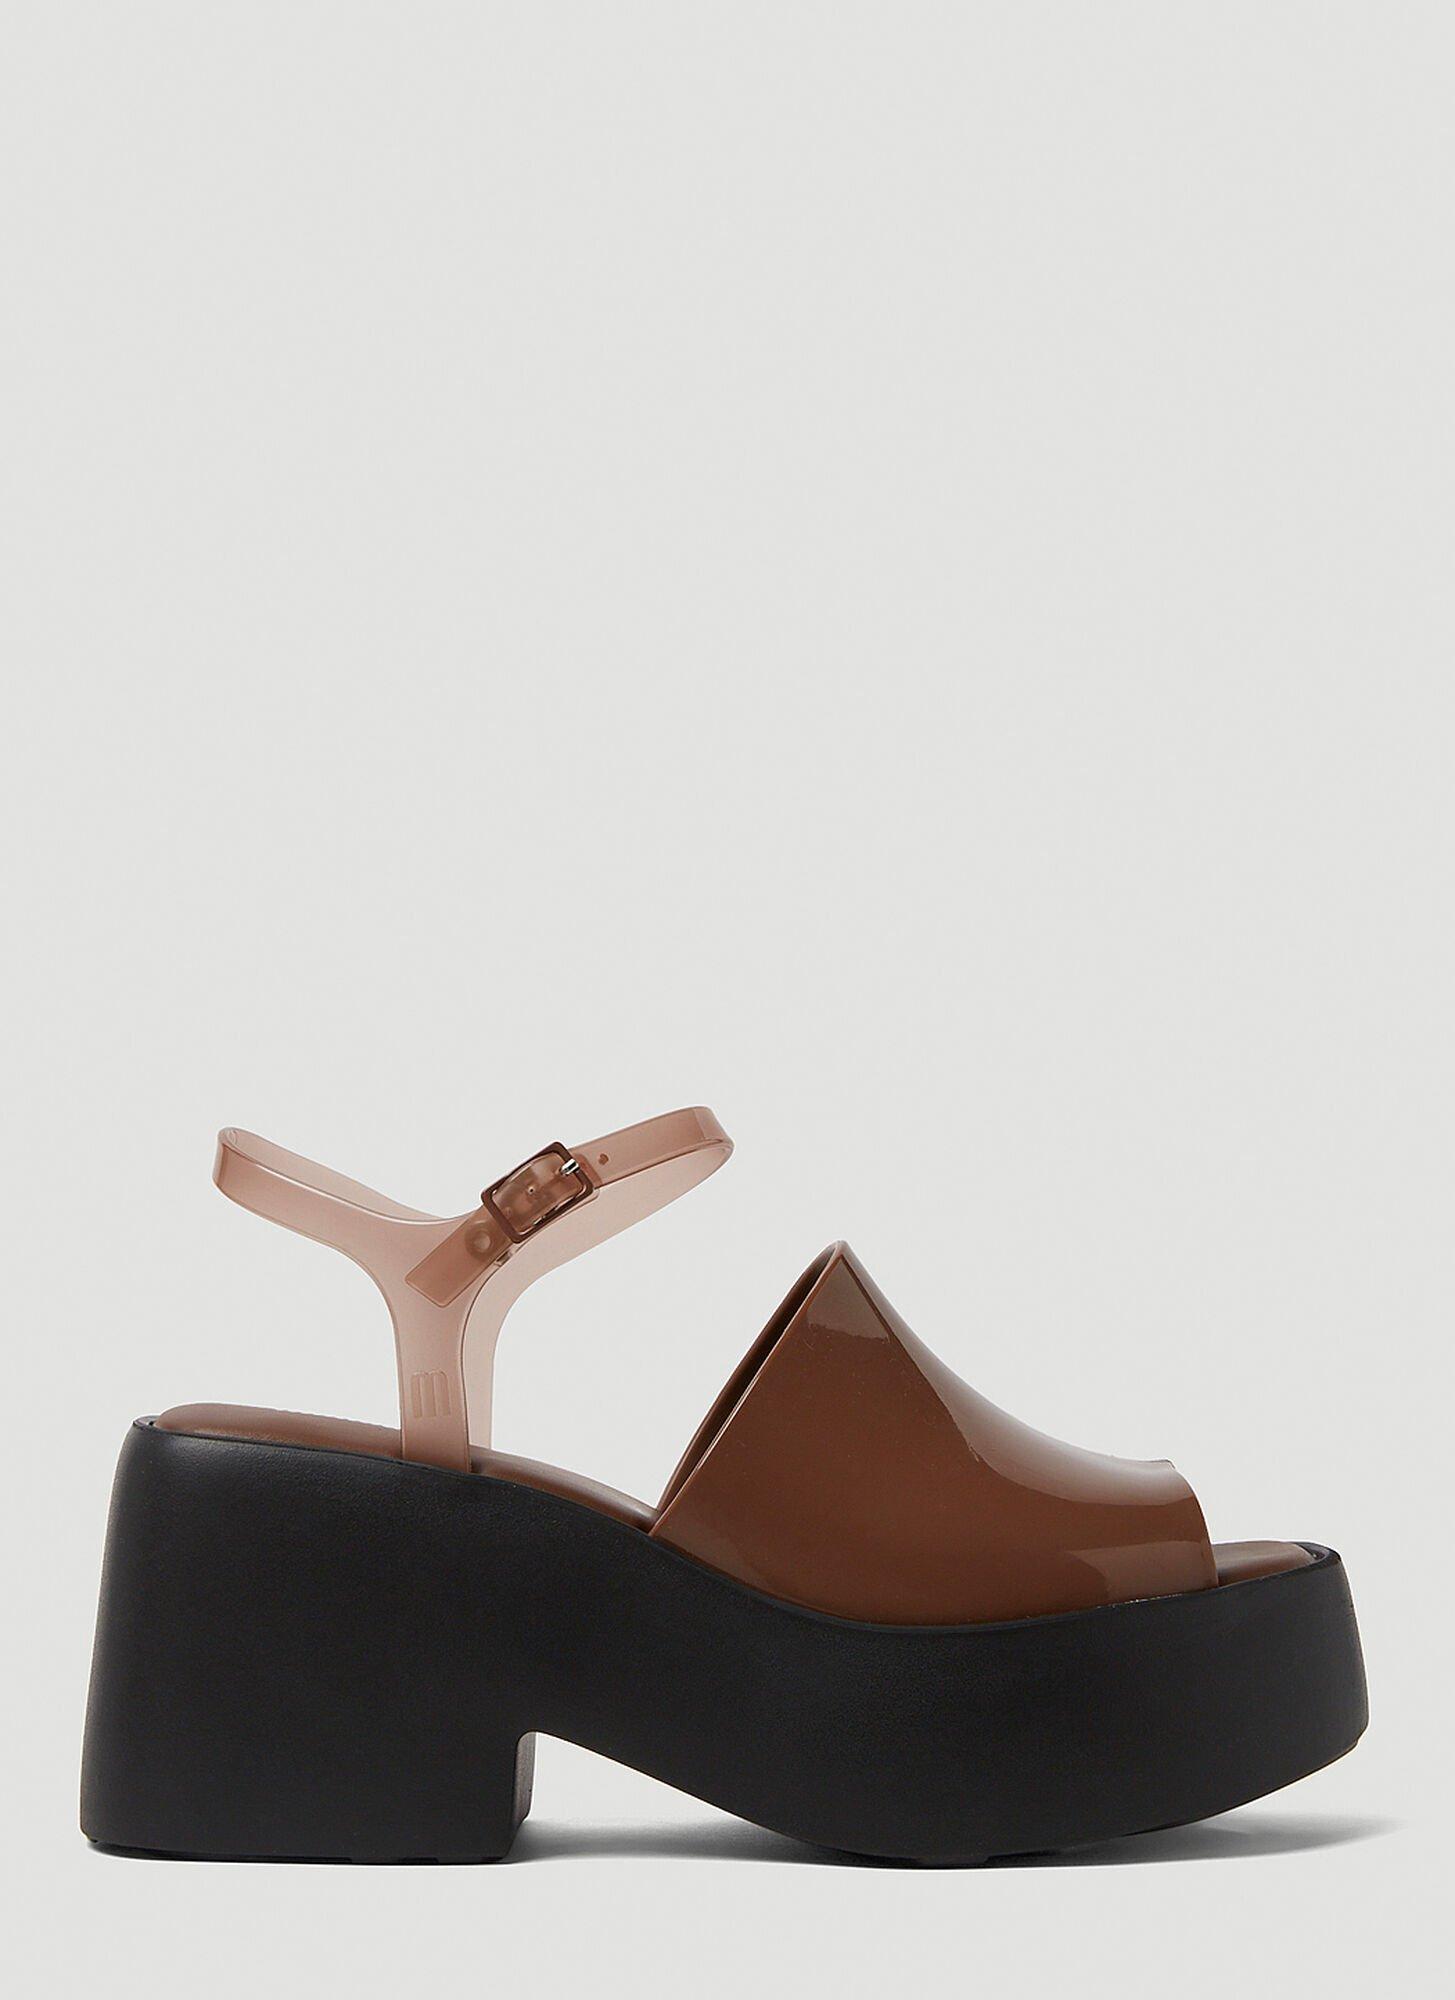 Melissa Pose Platform Sandals in Brown | Lyst